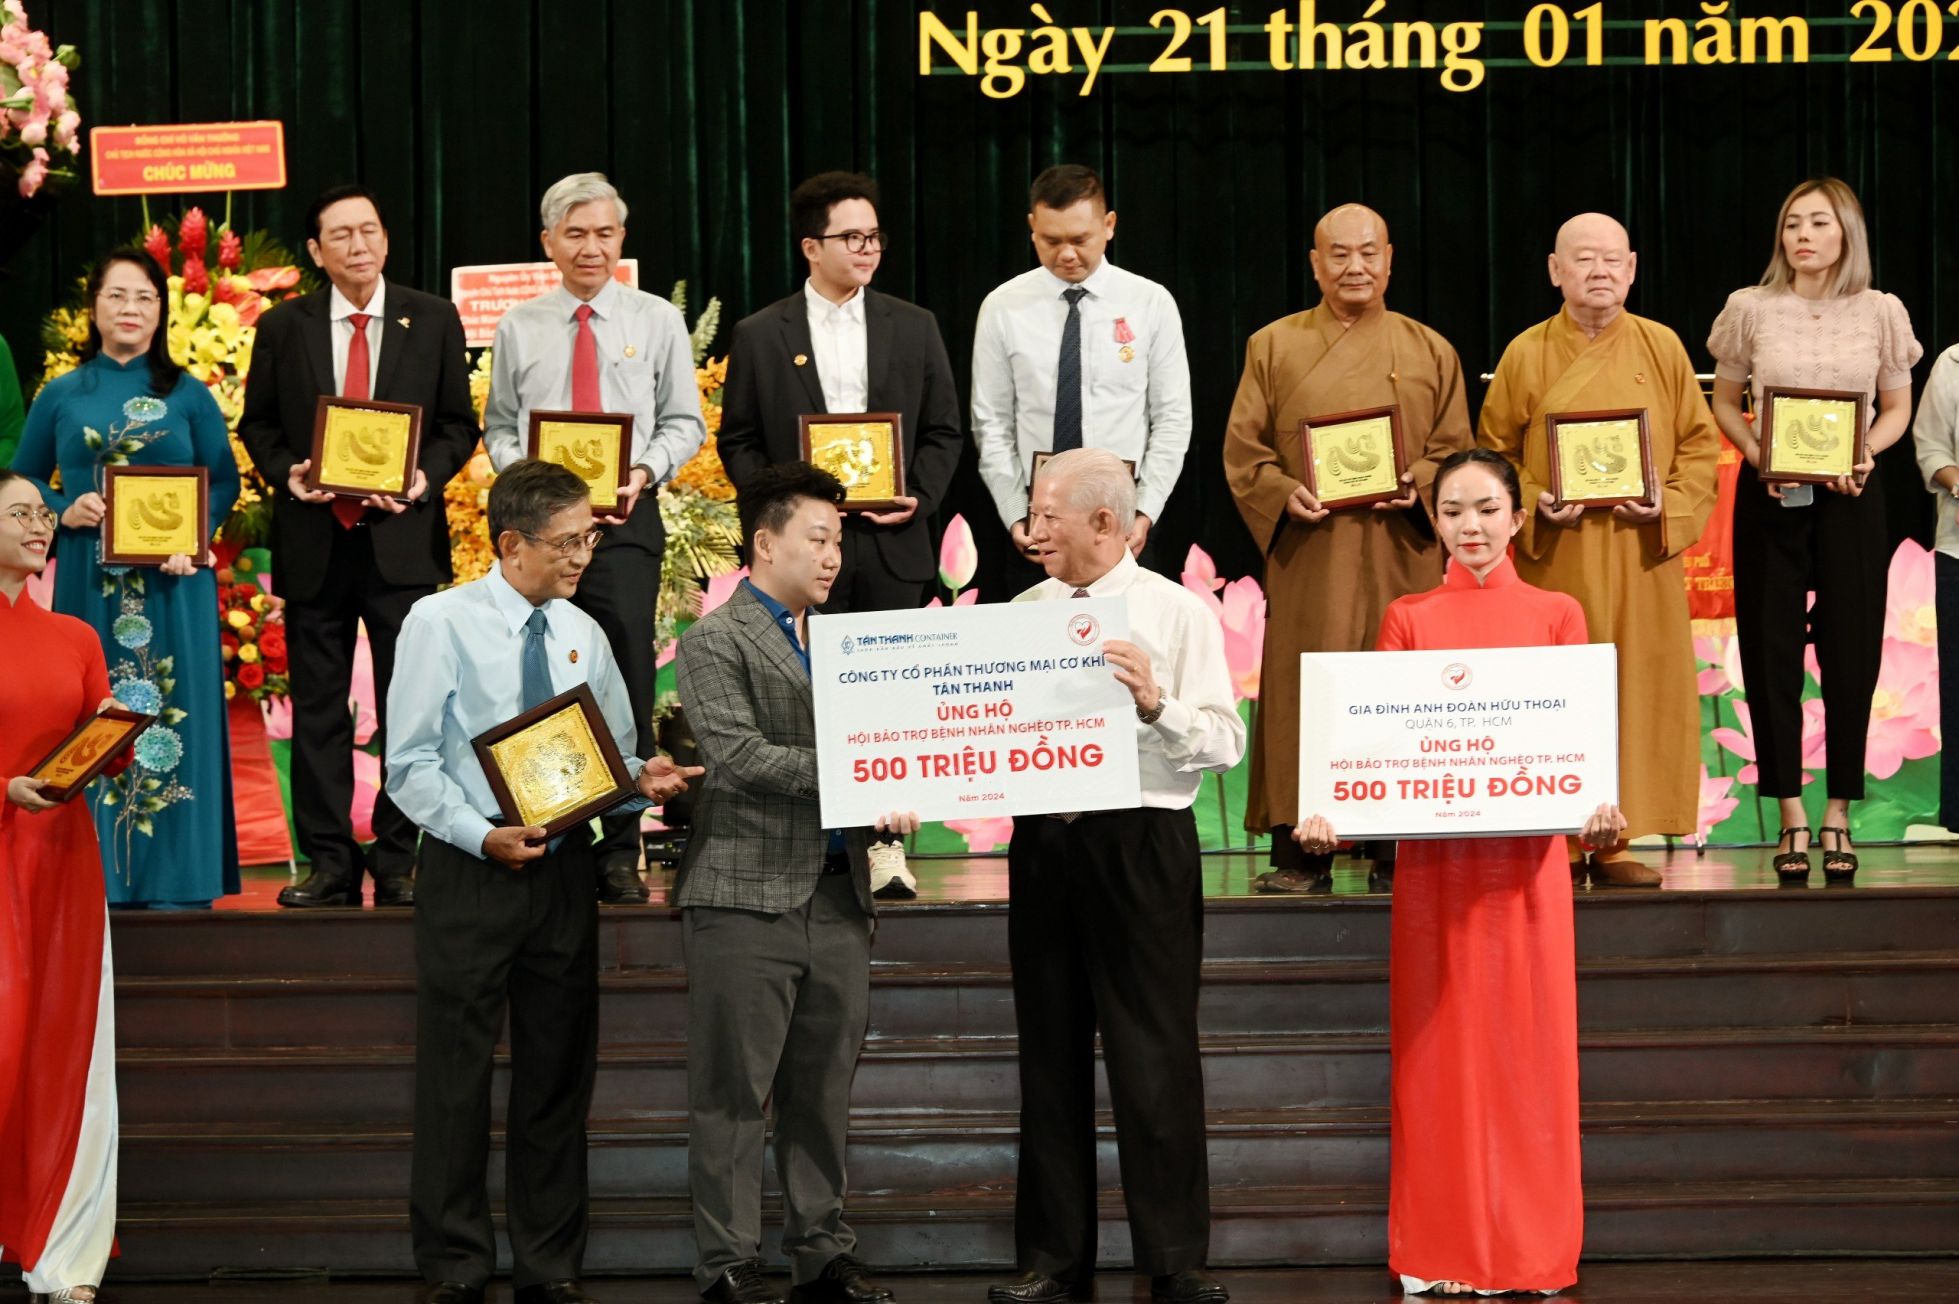 Phó Tổng Giám đốc công ty Tân Thanh - Bà Kiều Ngọc Phương trao bảng tài trợ 500 triệu đồng (1)